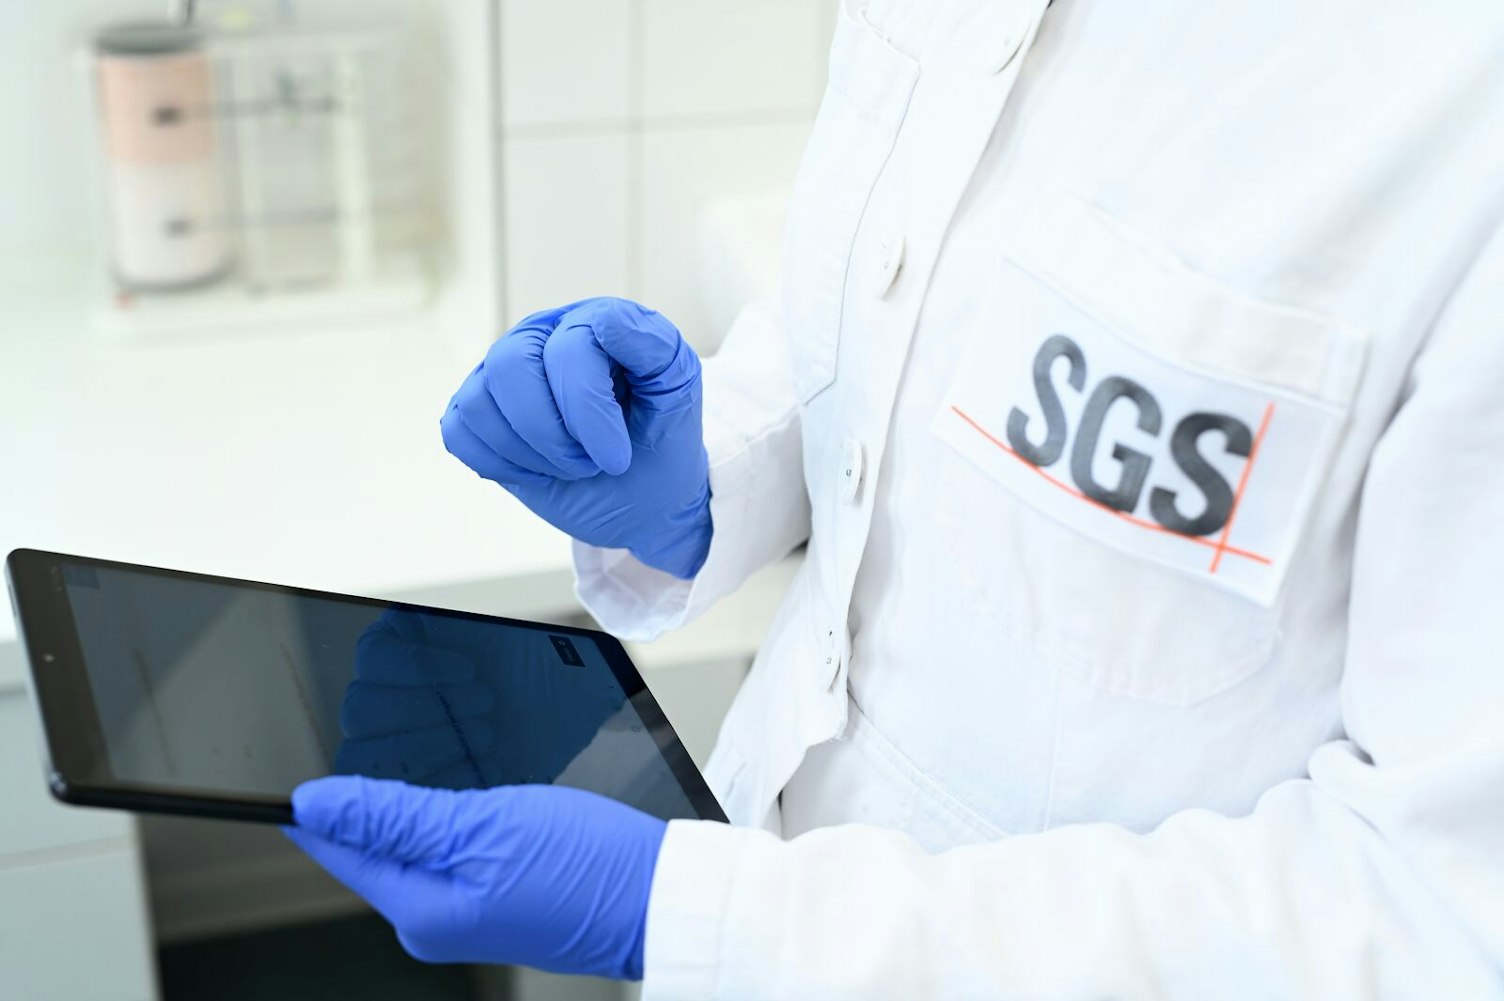 SGS Institut Fresenius - Análise Laboratorial de Cosméticos, Hamburgo, Alemanha